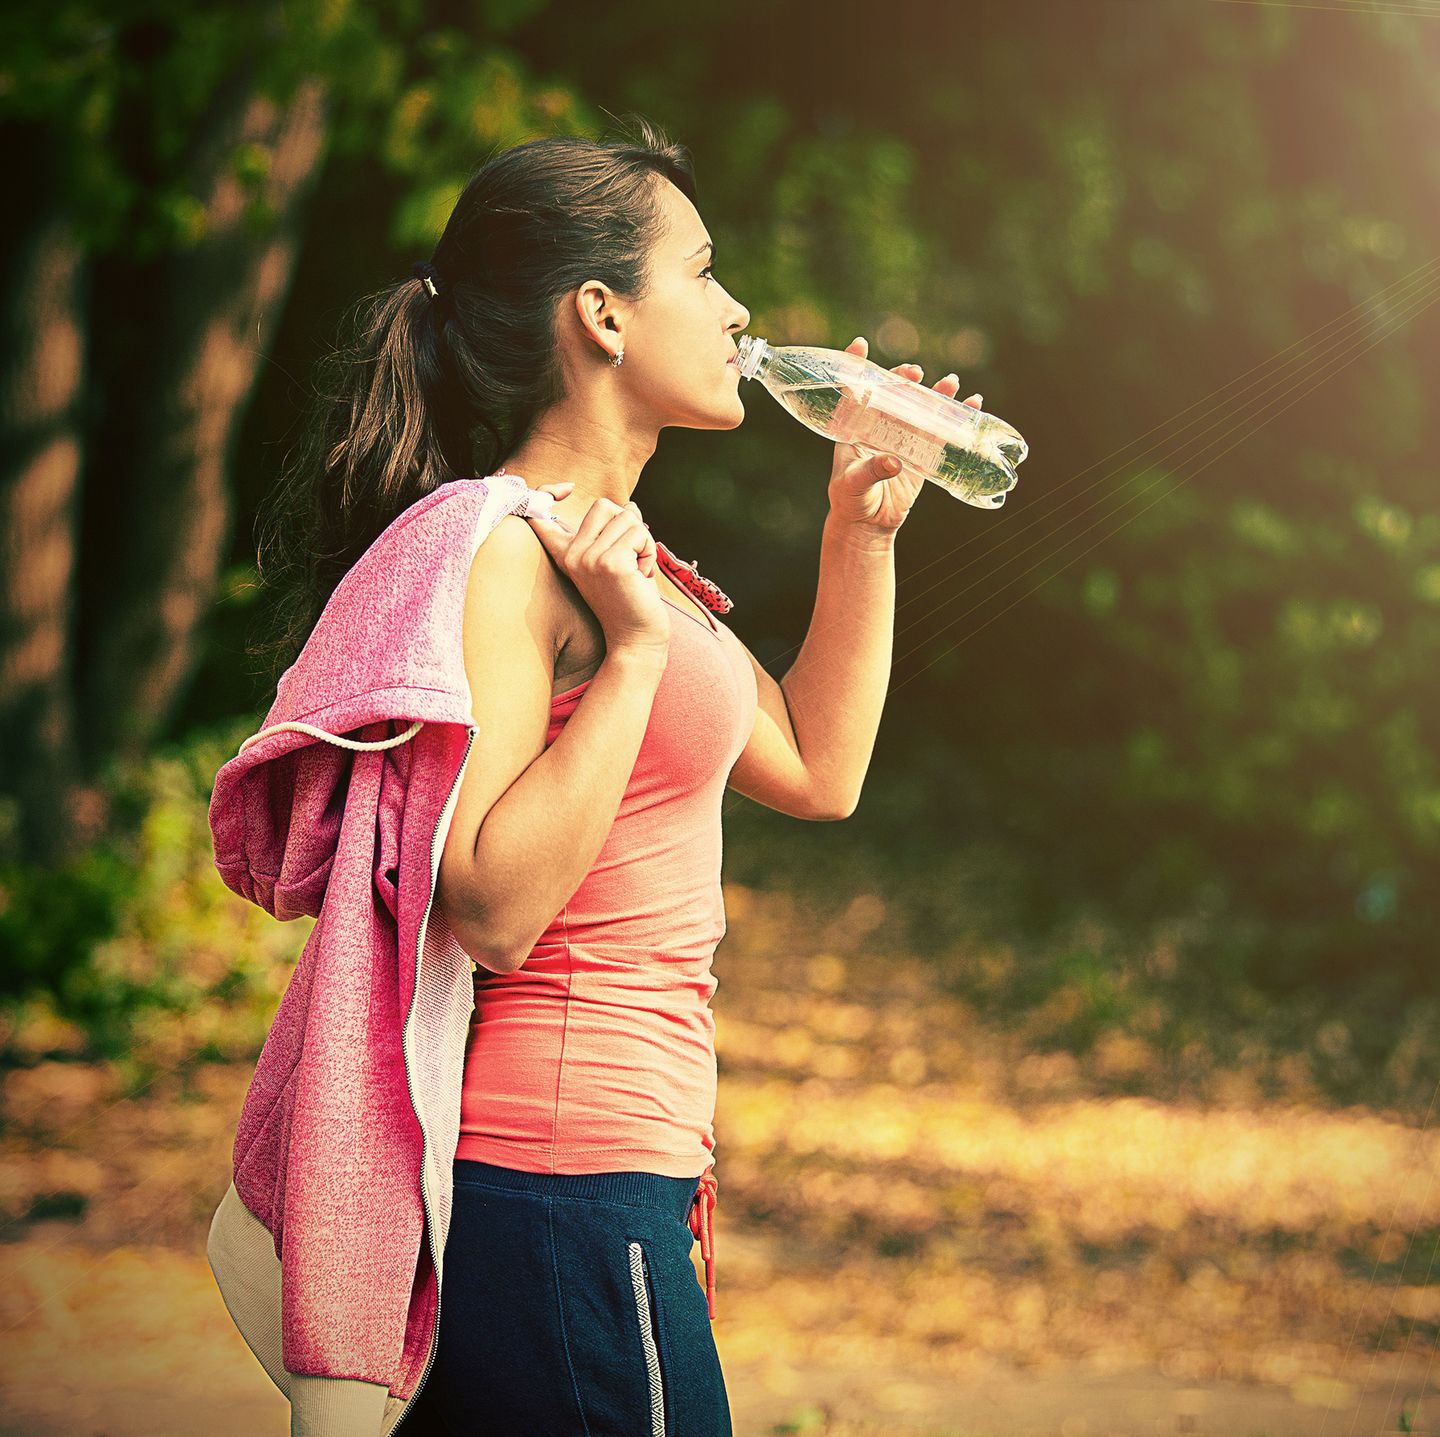 Gesunde Ernährung: Frau im Sport-Outfit trinkt Wasser aus der Flasche